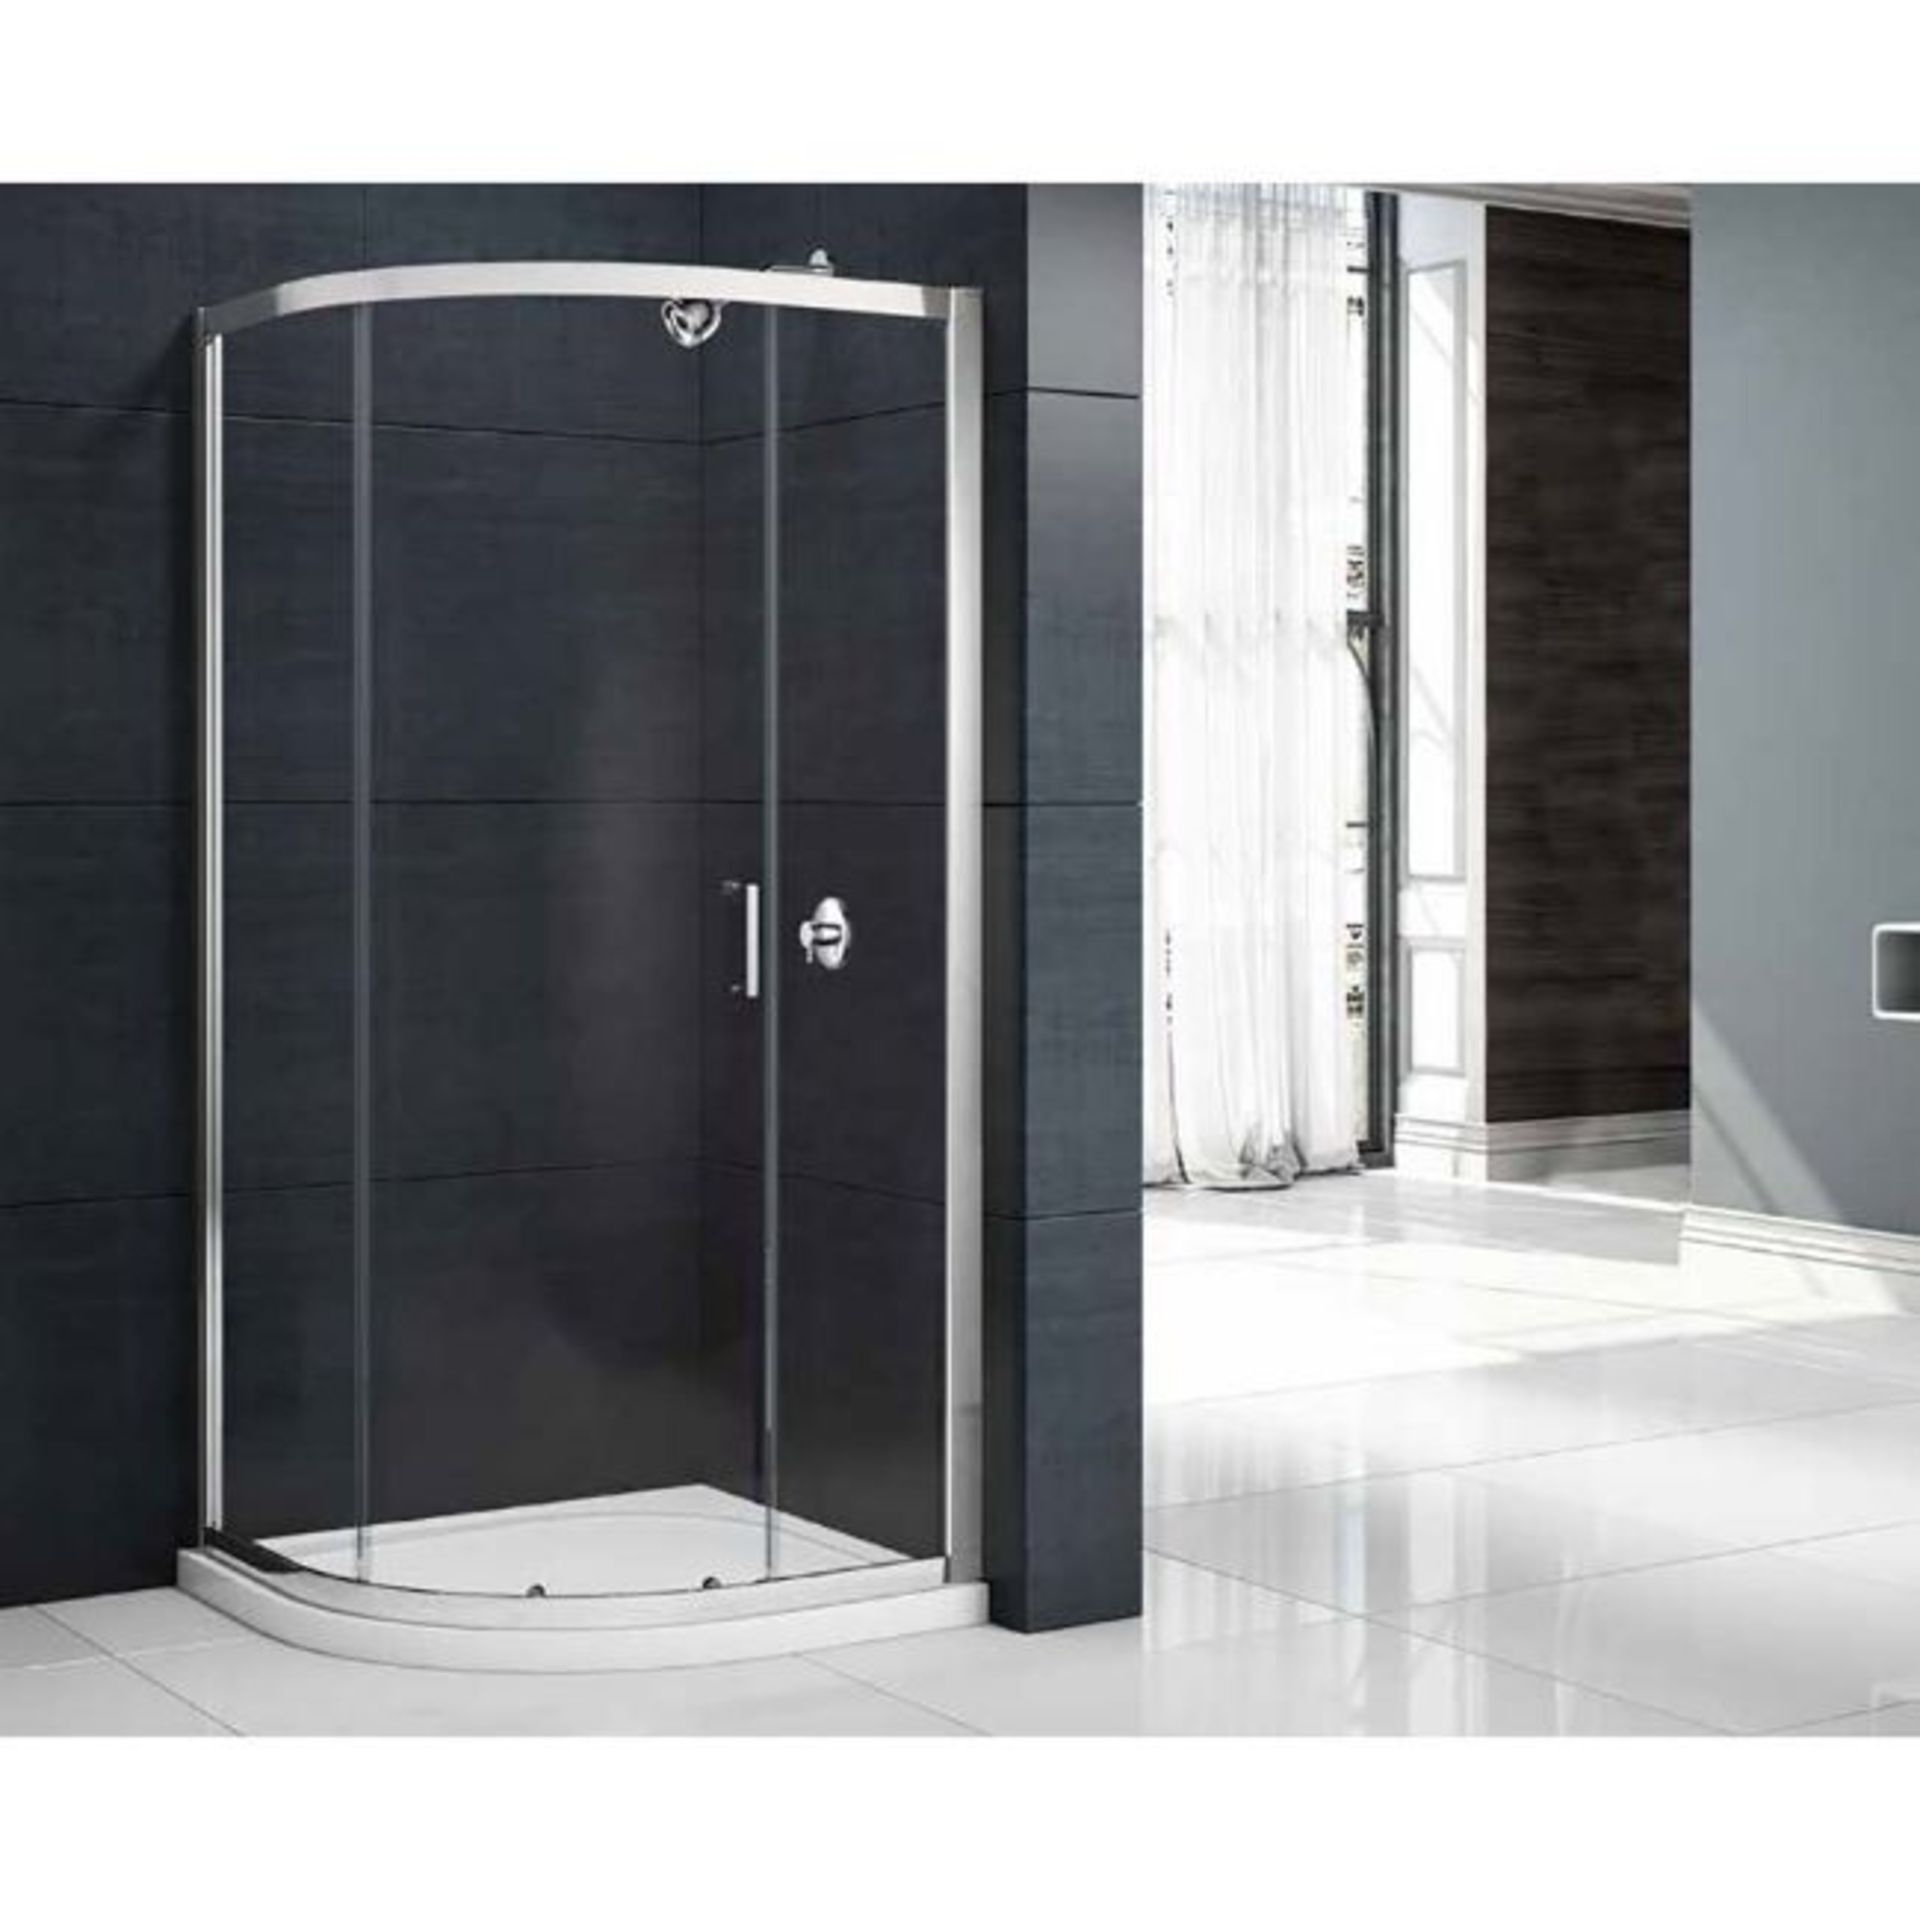 New (E120) 900x900mm 1 Door Quadrant Shower Enclosure. RRP £398.29.Constructed Of 6mm